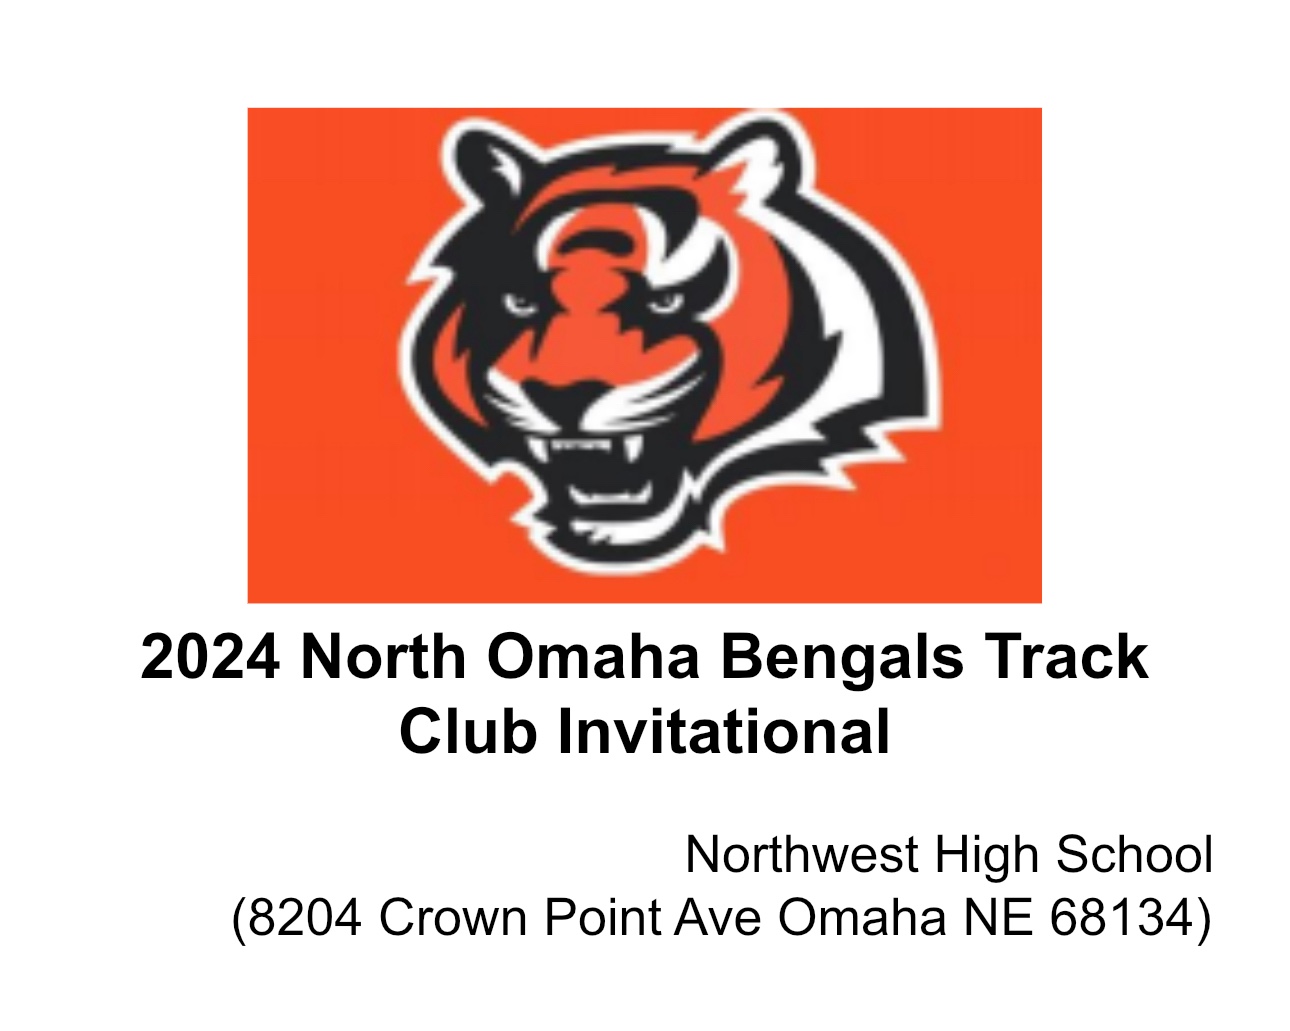 2024 North Omaha Bengal Invite